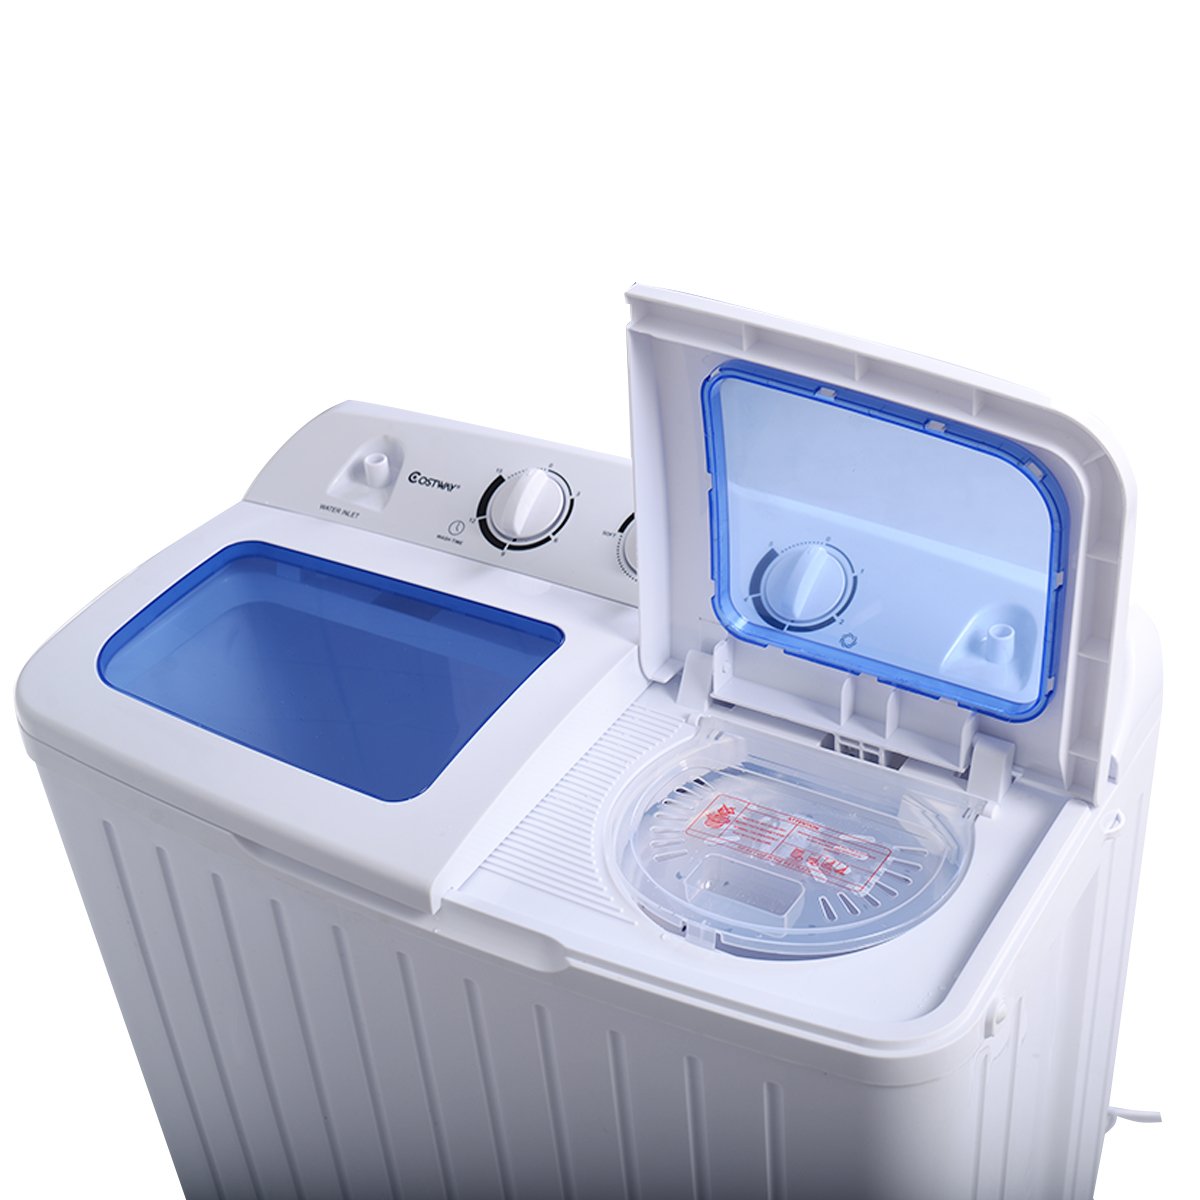 Стиральную машинку мини купить недорого. Washing Machine мини стиральная машина. Мини стиральная машинка EASYMAXX. Стиральная машина Willmark WM-20a Малютка 2кг. Стиральная машина Willmark WMA-602p.